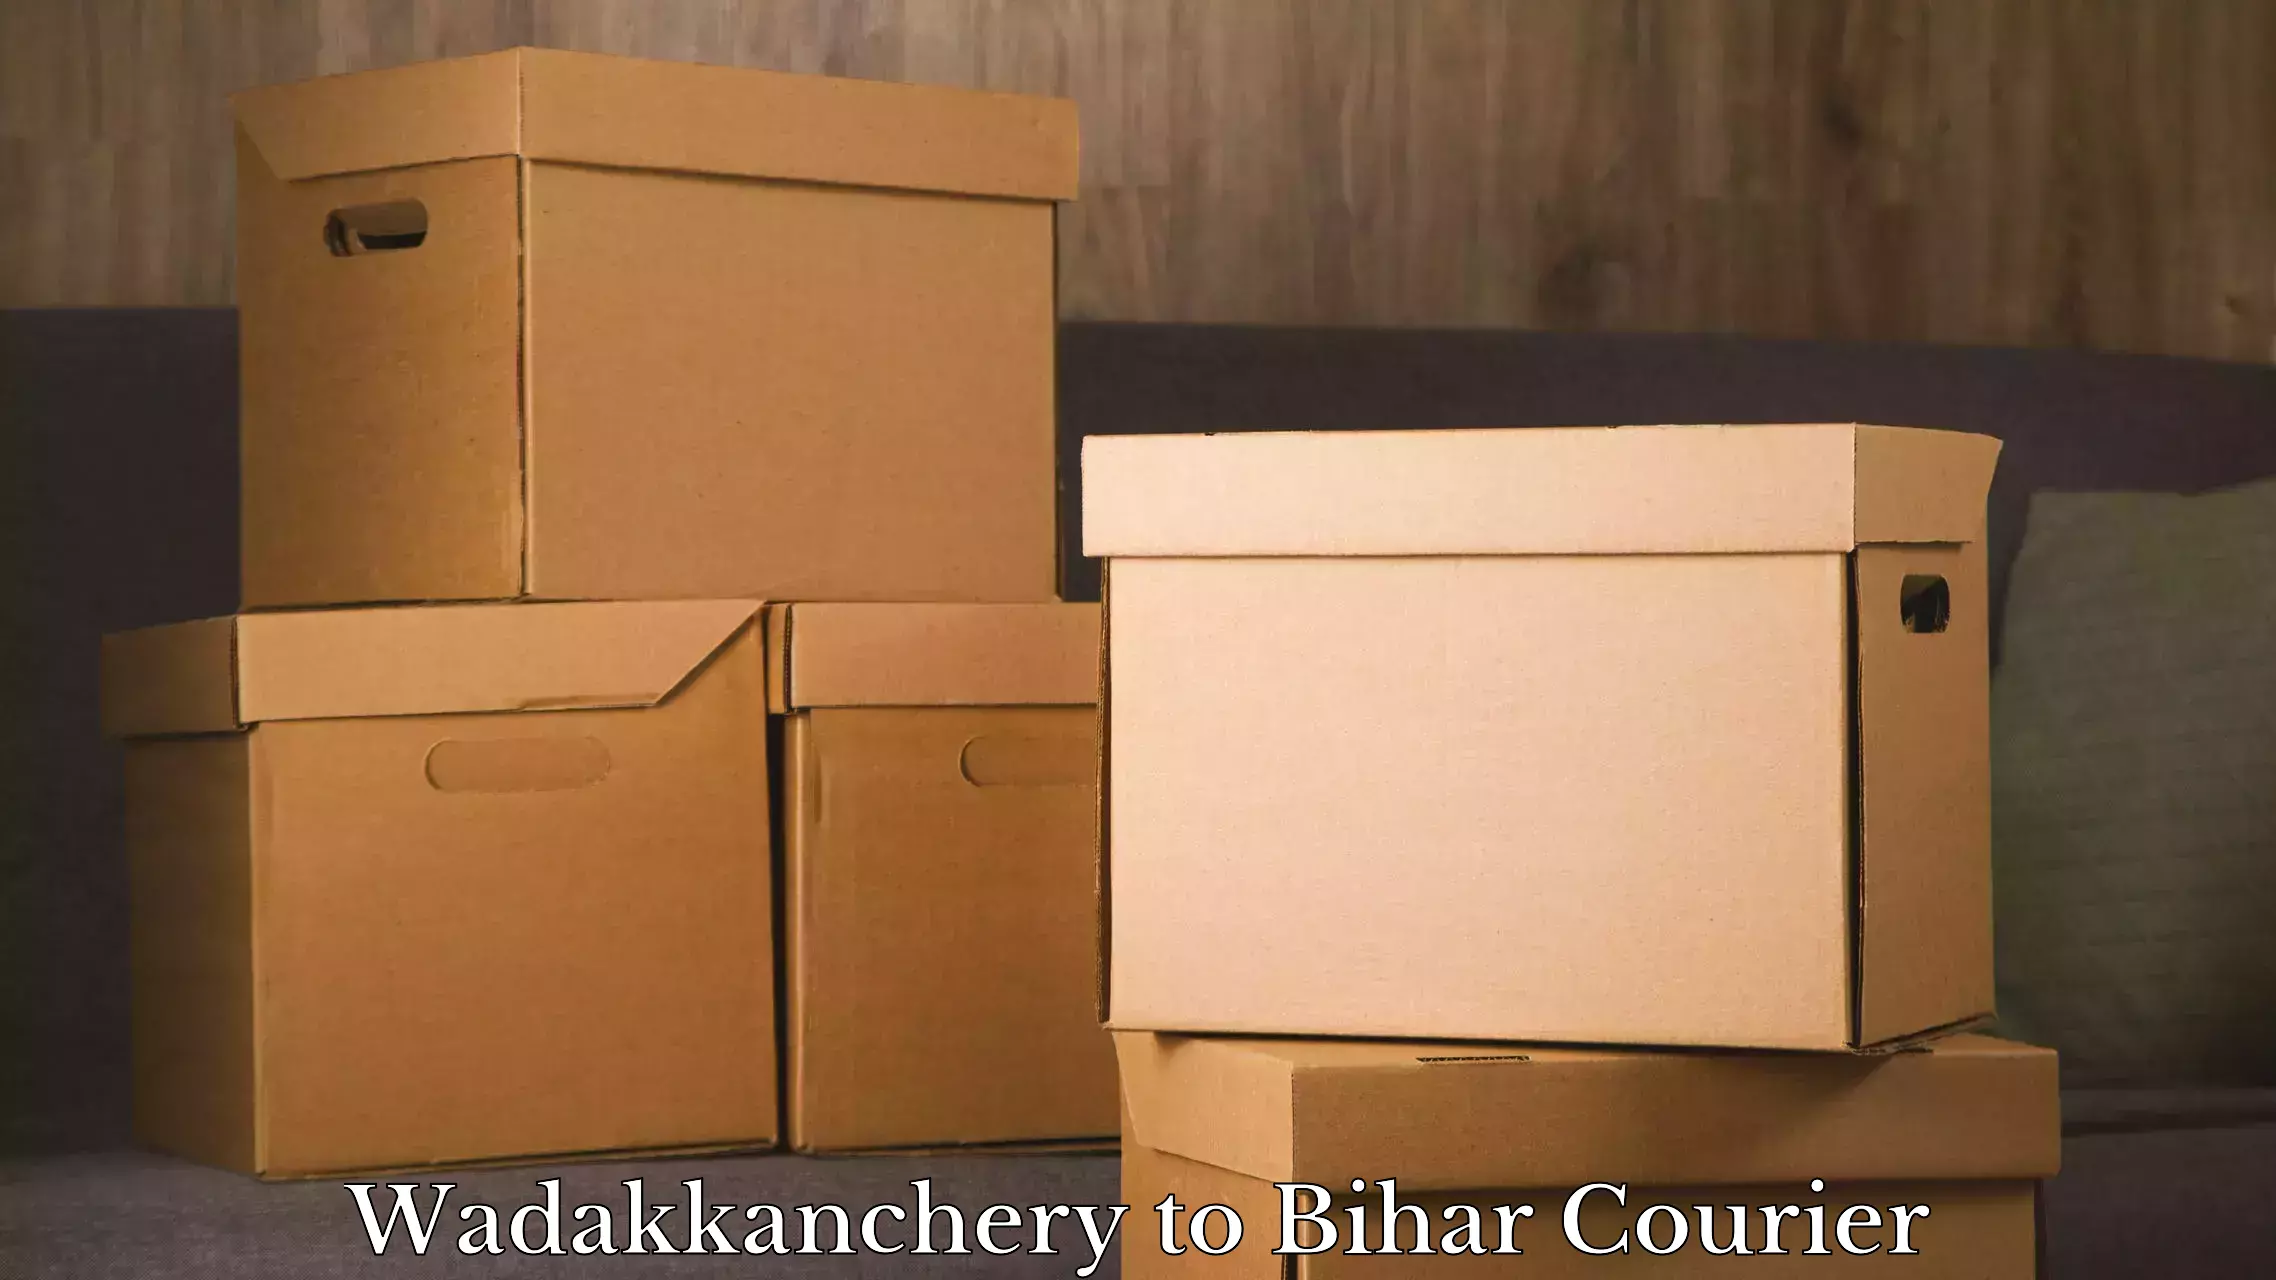 Luggage transit service Wadakkanchery to Bihar